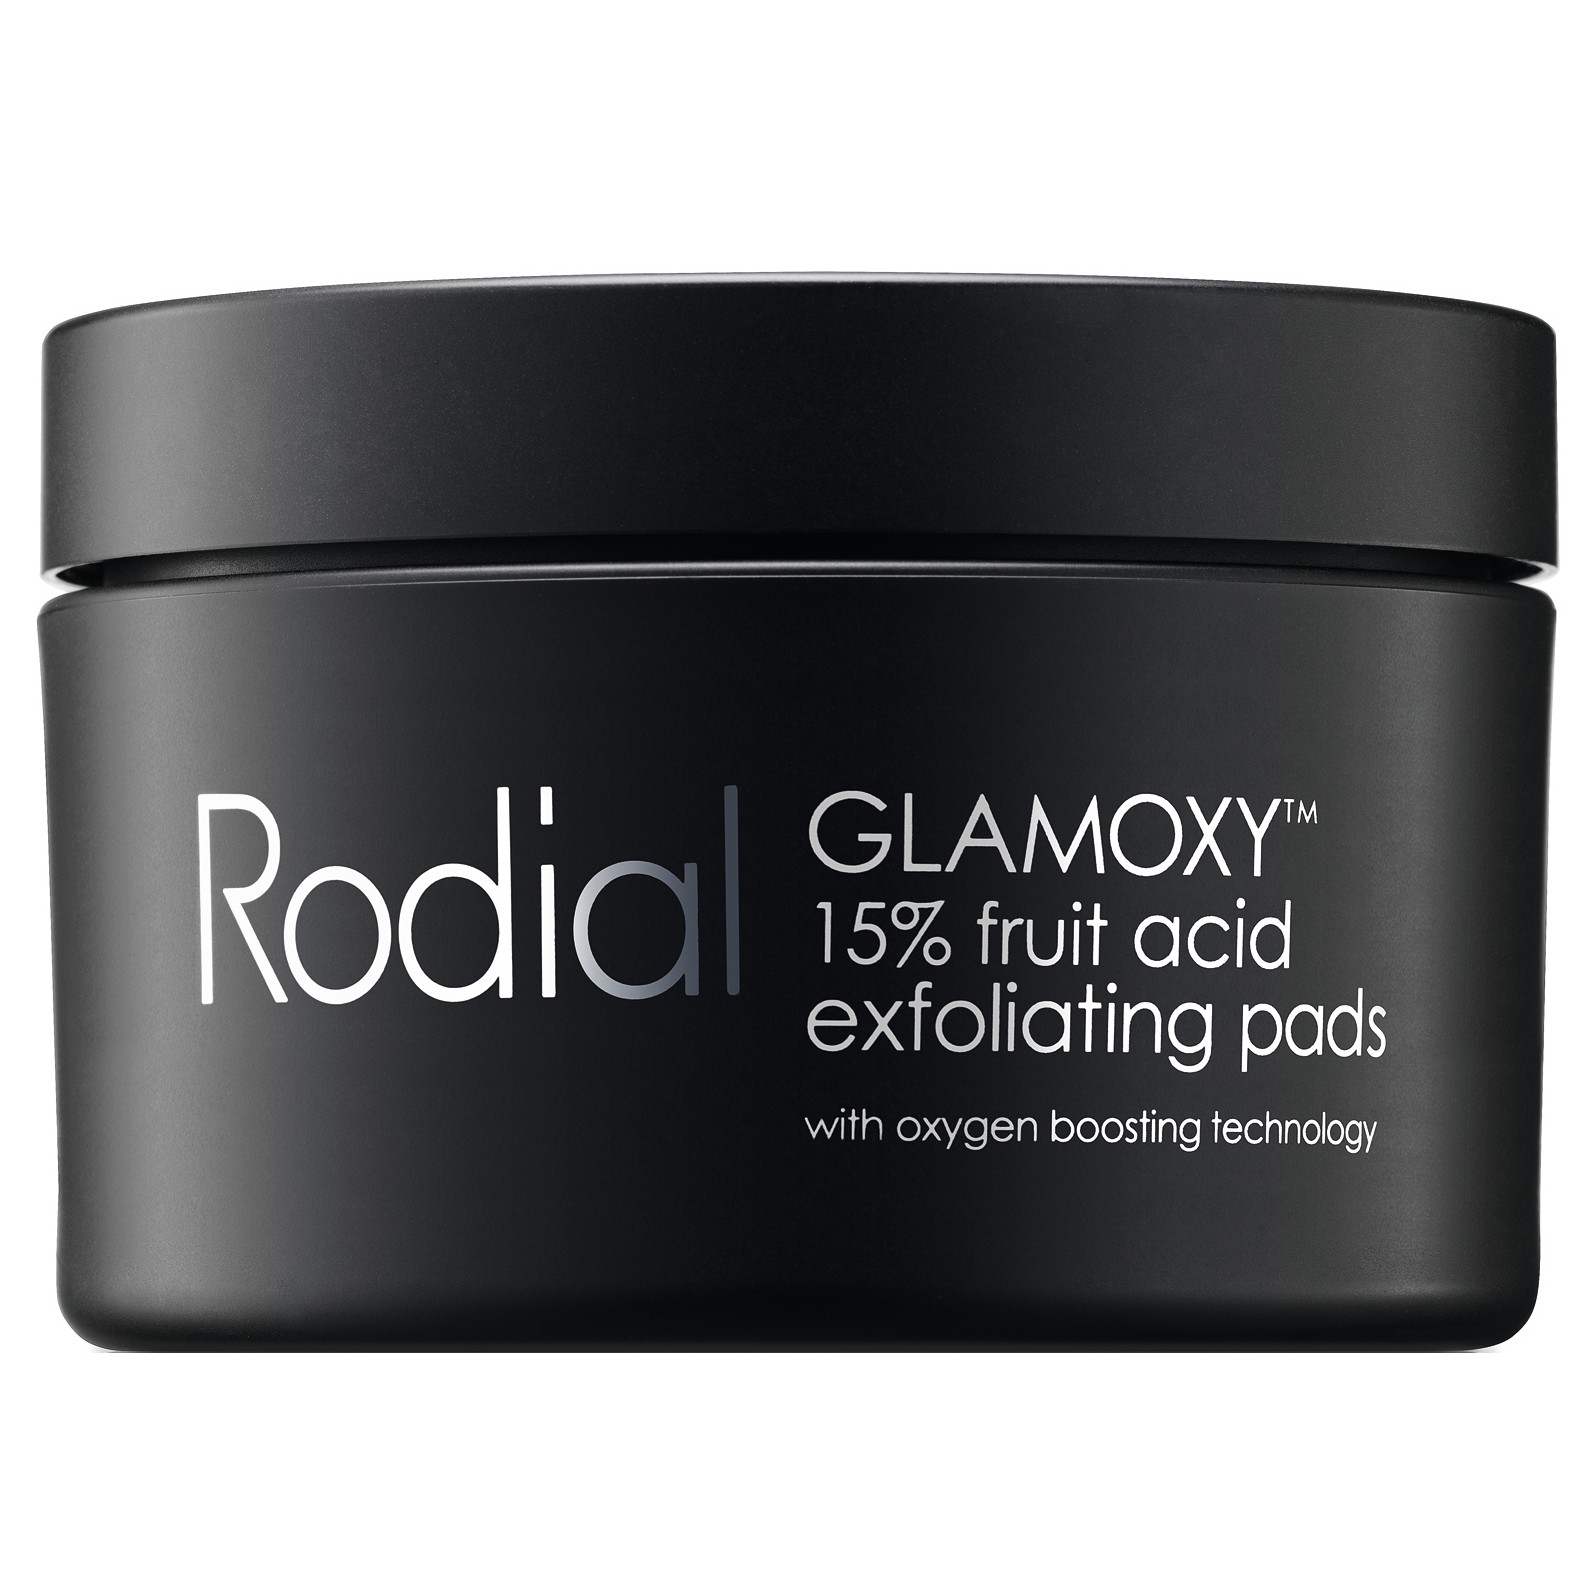 Rodial Glamoxy 15% Fruit Acid Exfoliating Pads